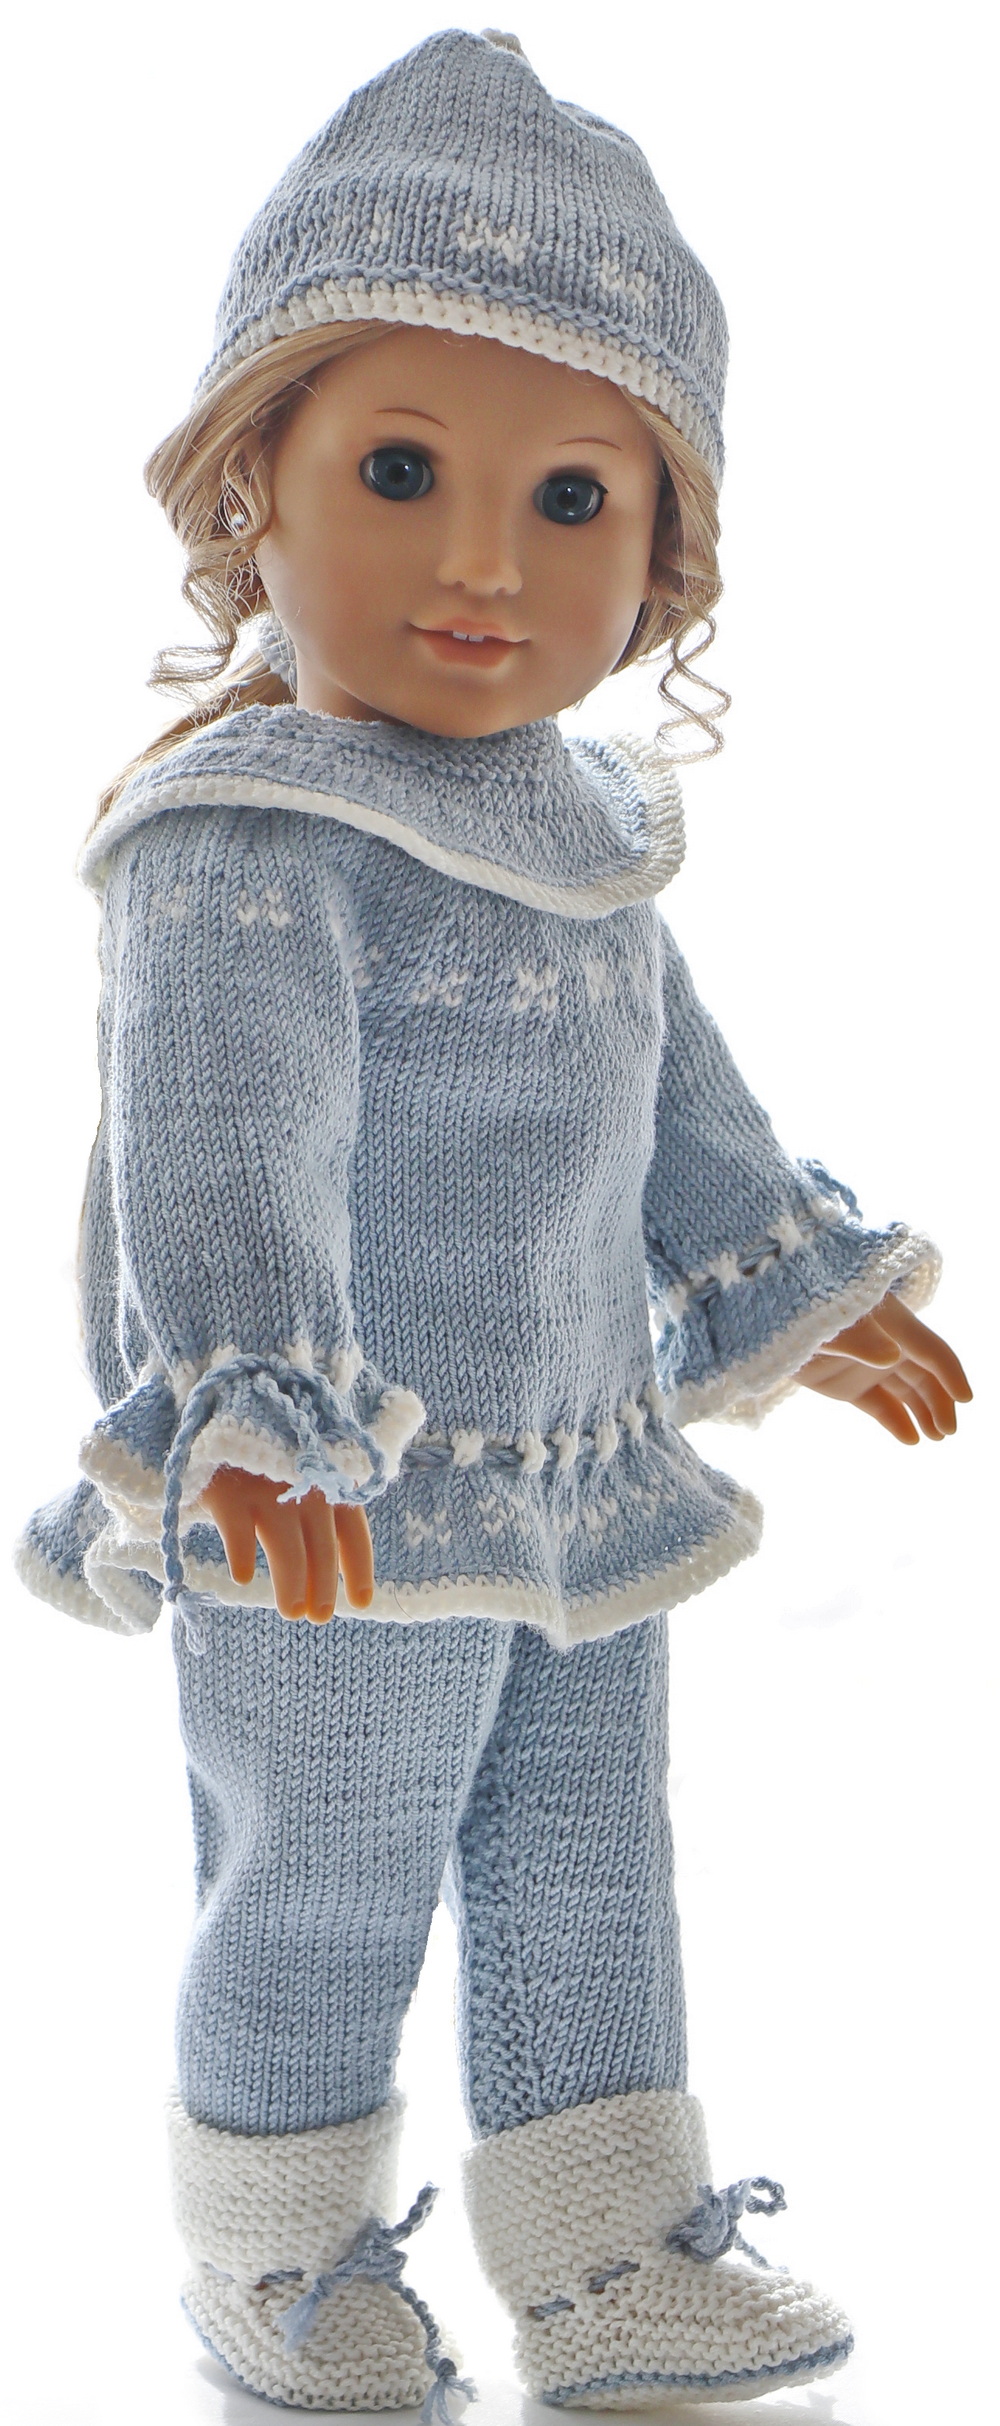 0232d-06-knitting-patterns-for-american-girl-dolls.jpg